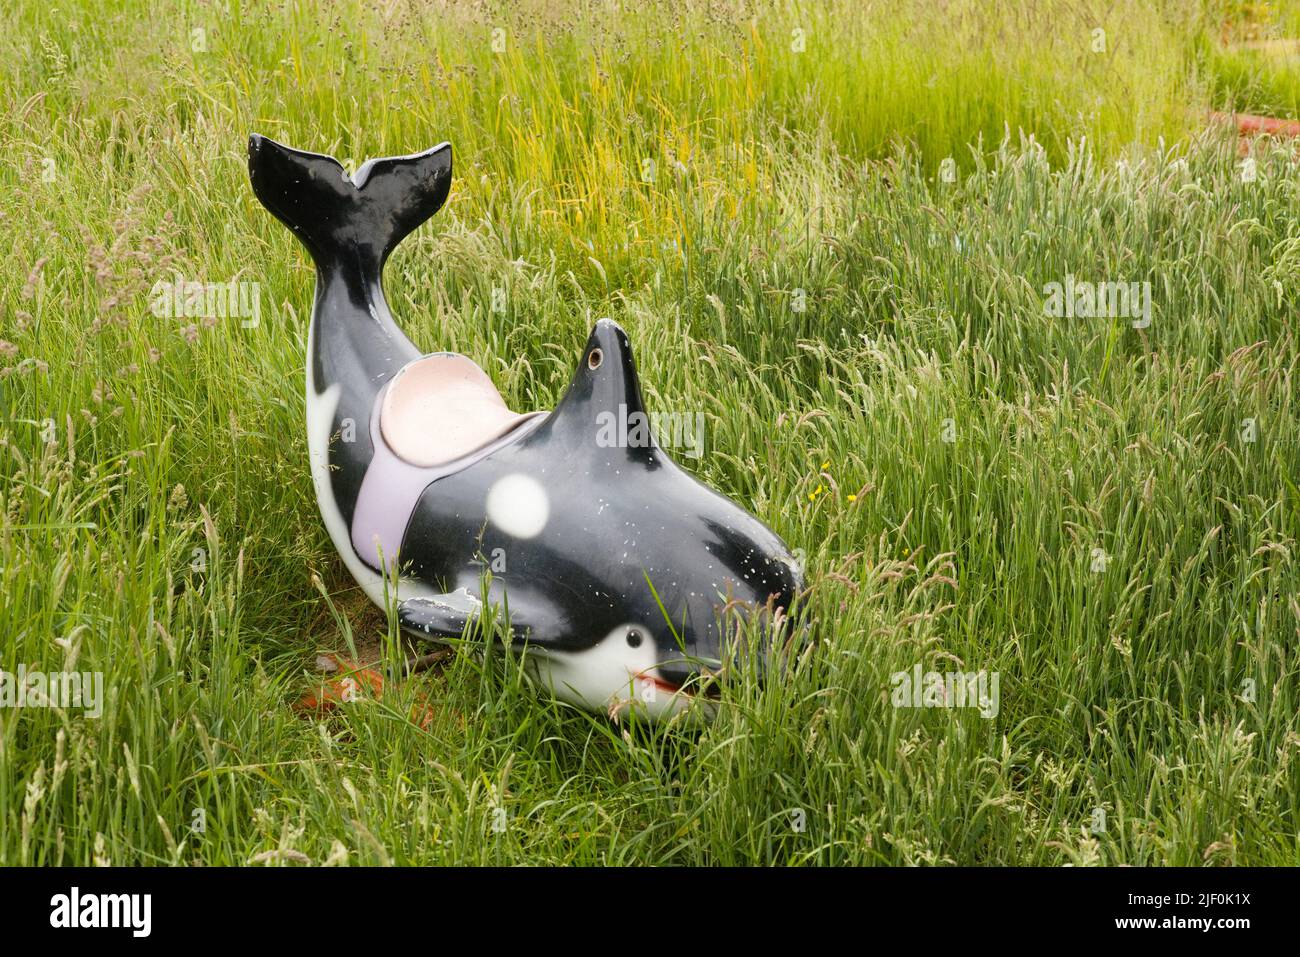 Un delfín de parque infantil roto se encuentra abandonado en las malas hierbas en una zona de golf descabellada Foto de stock